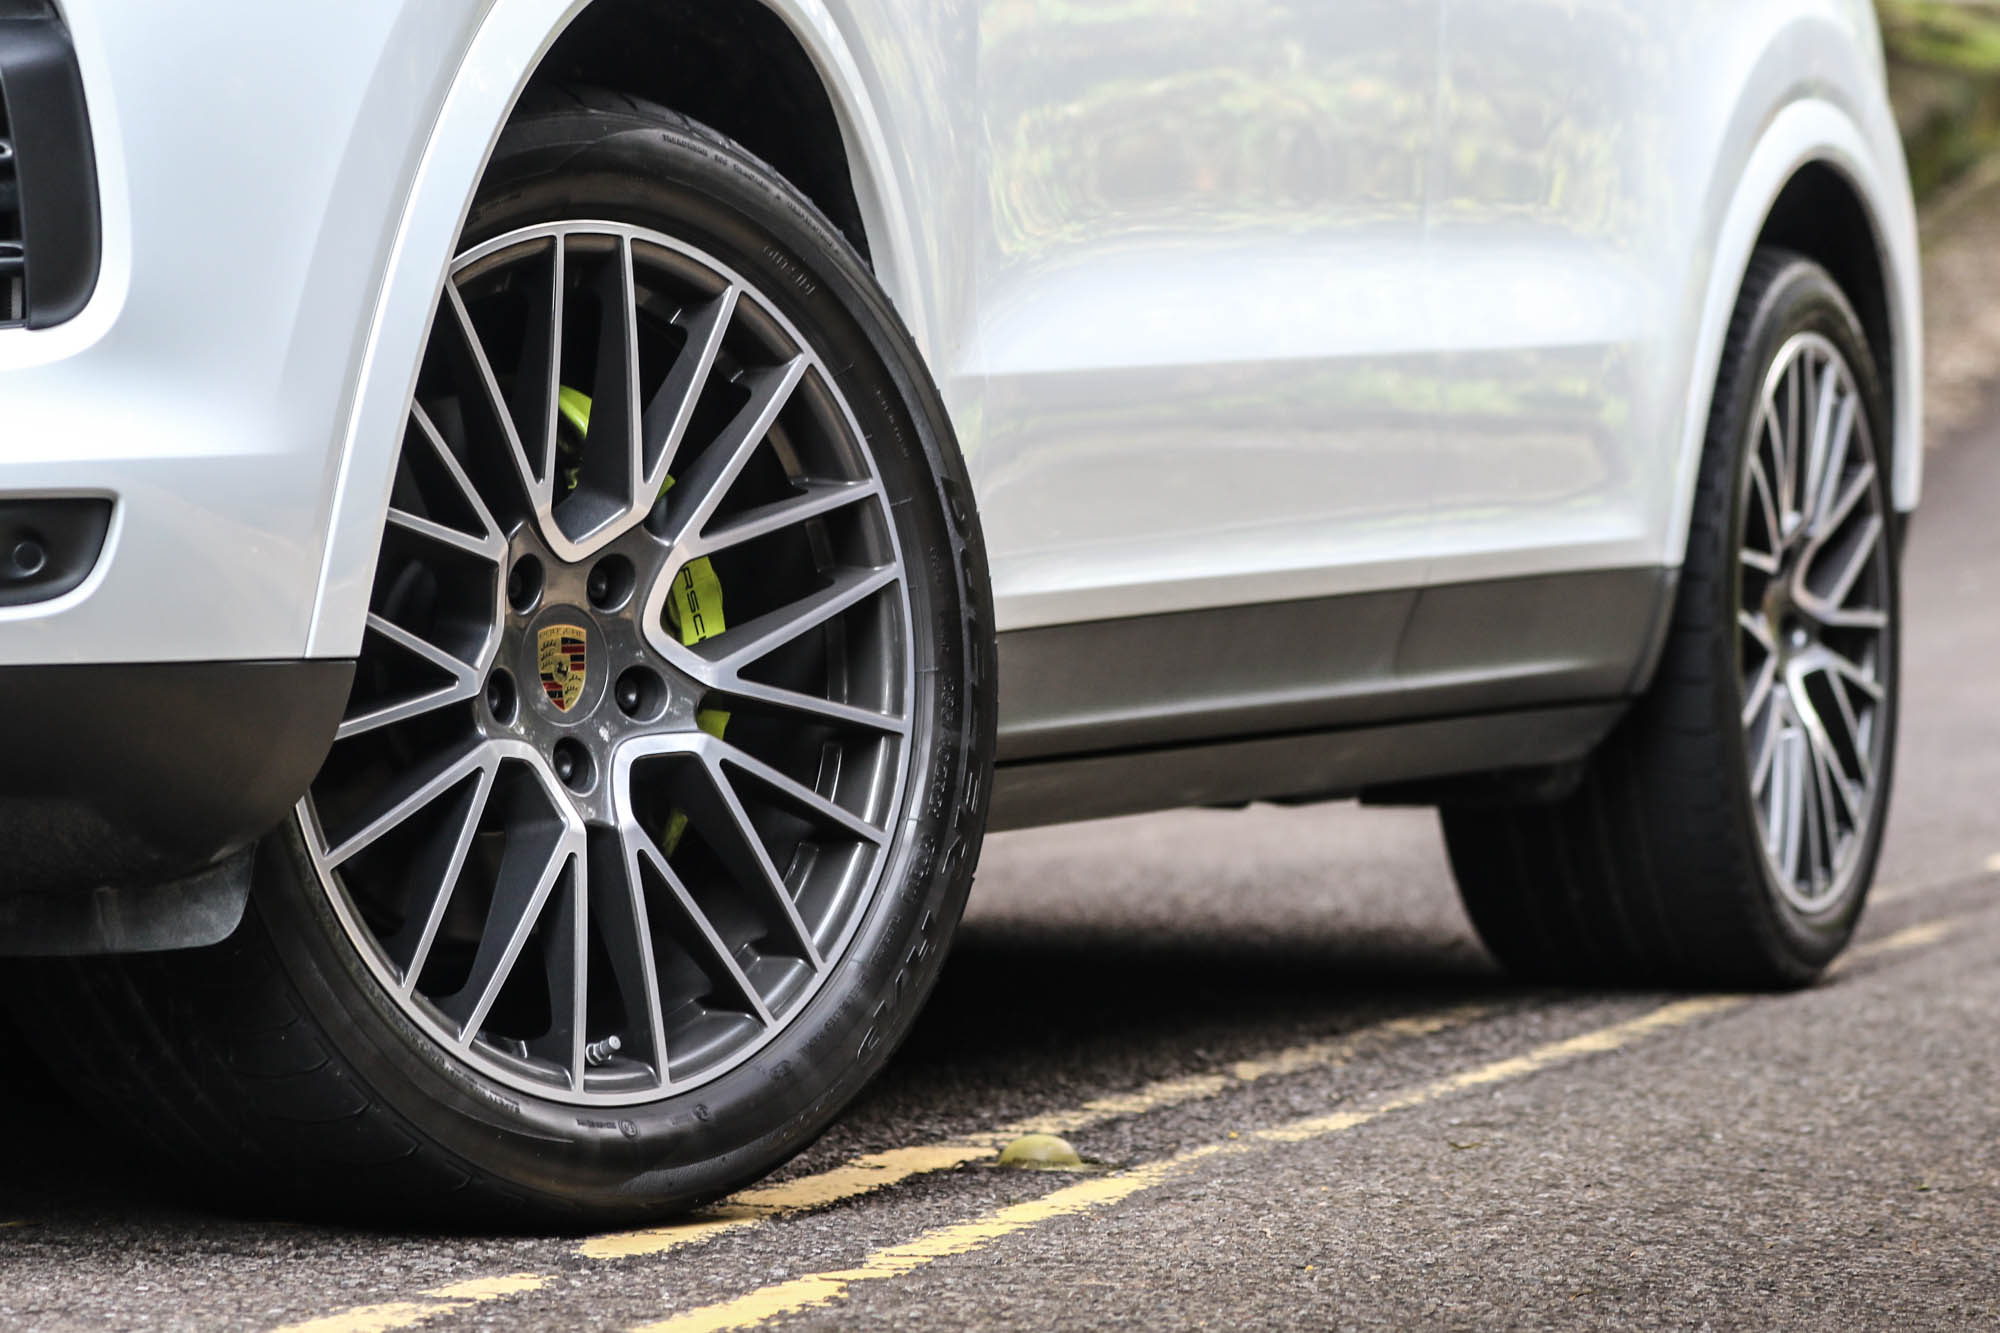 21 吋 RS Spyder Design 輪圈，當然也是需要加價選購，不過螢光色的煞車卡鉗塗裝，則是 Hybrid 車型的共通特色。